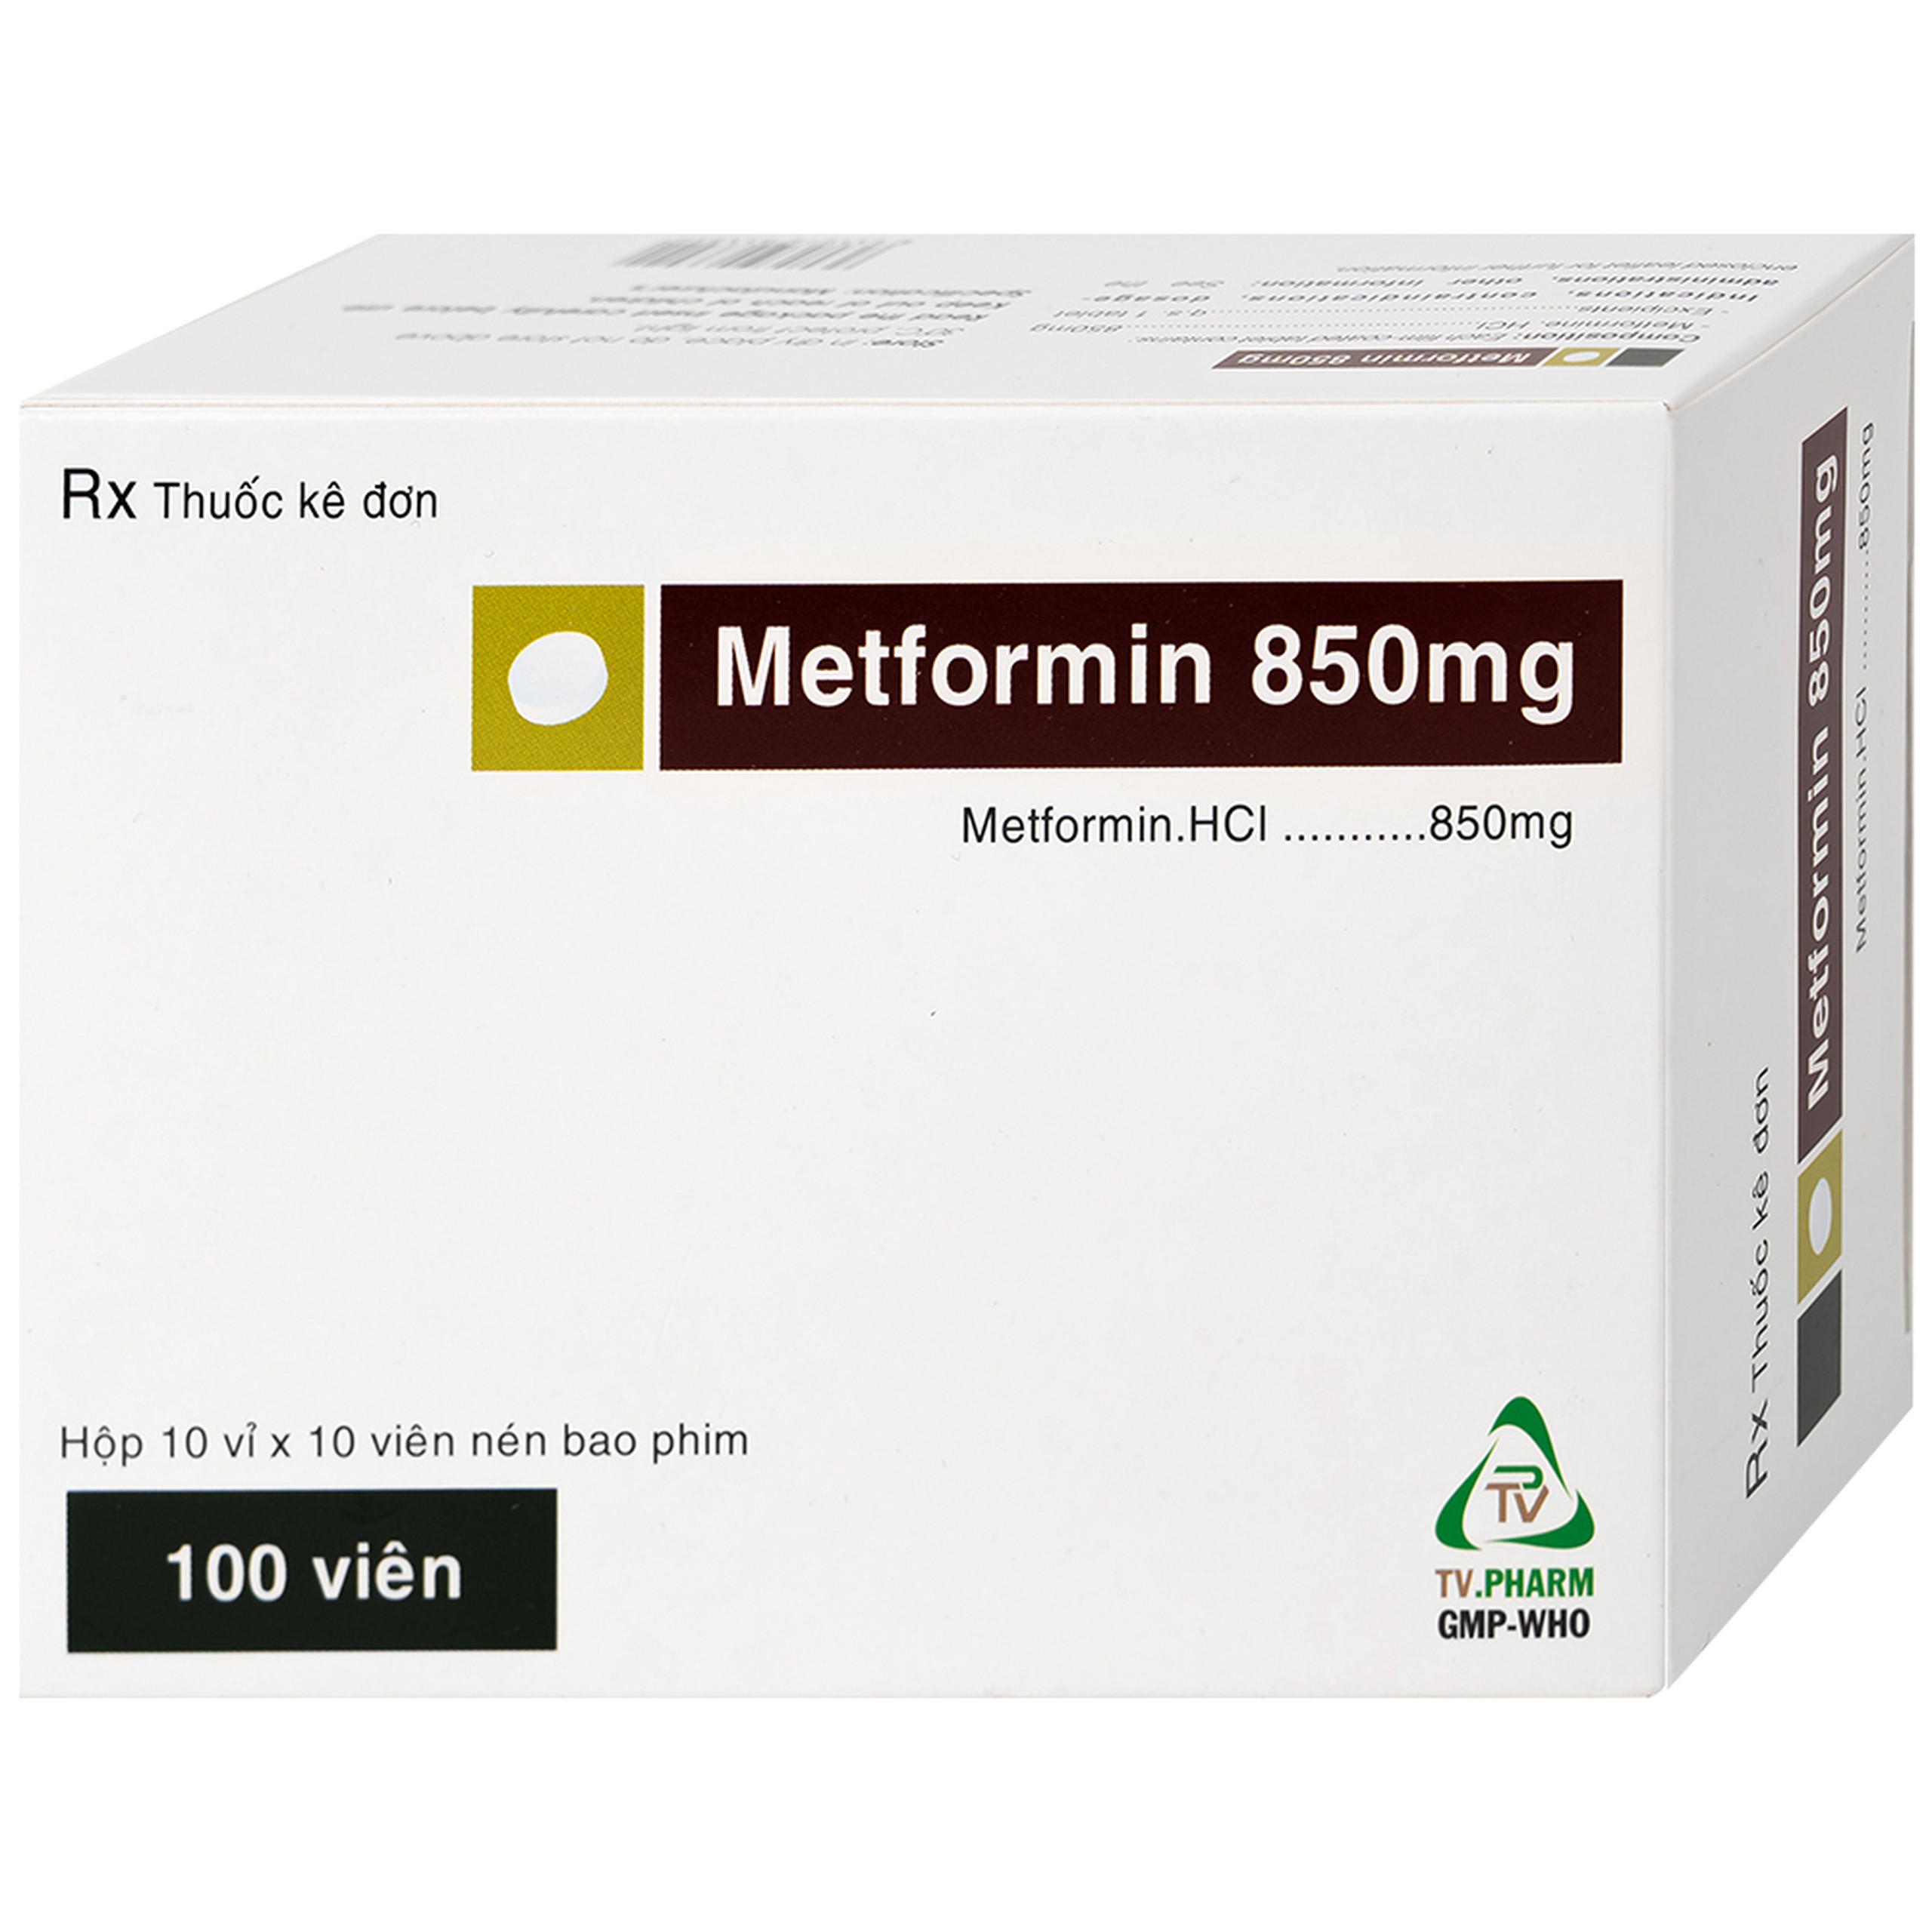 Thuốc Metformin 850mg TV.Pharm điều trị bệnh đái tháo đường (10 vỉ x 10 viên)